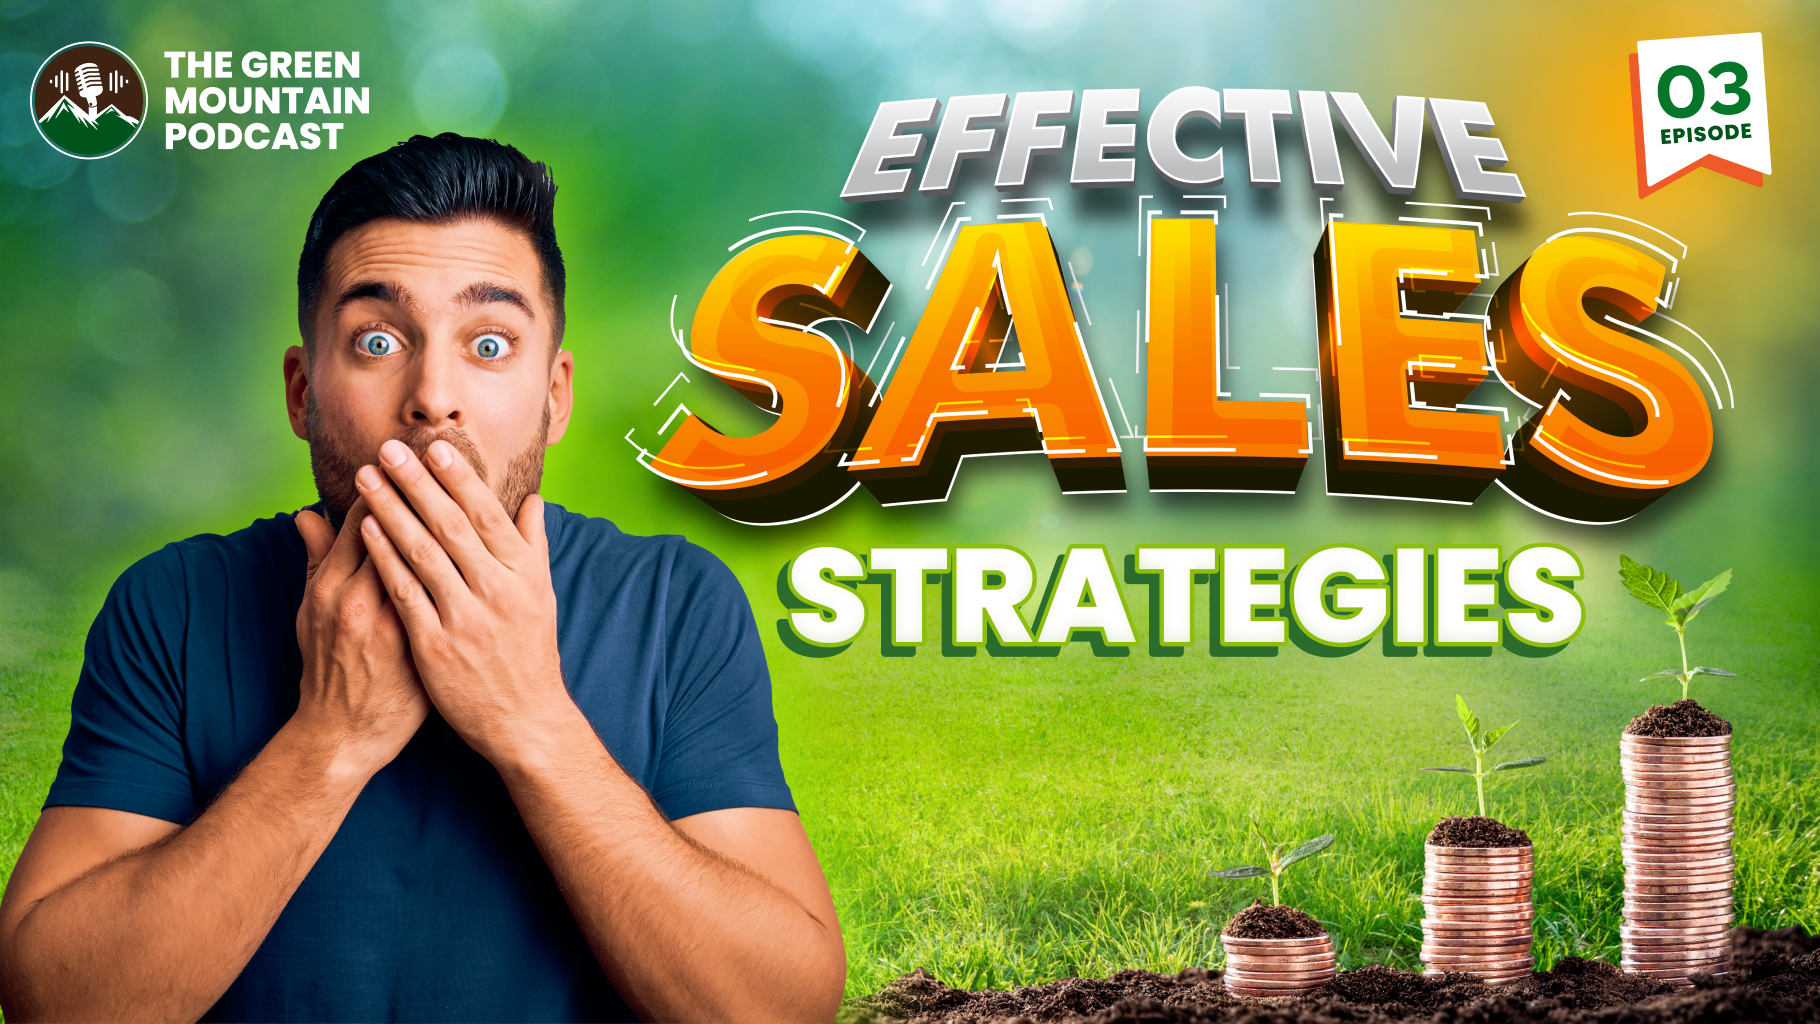 Sales Strategies